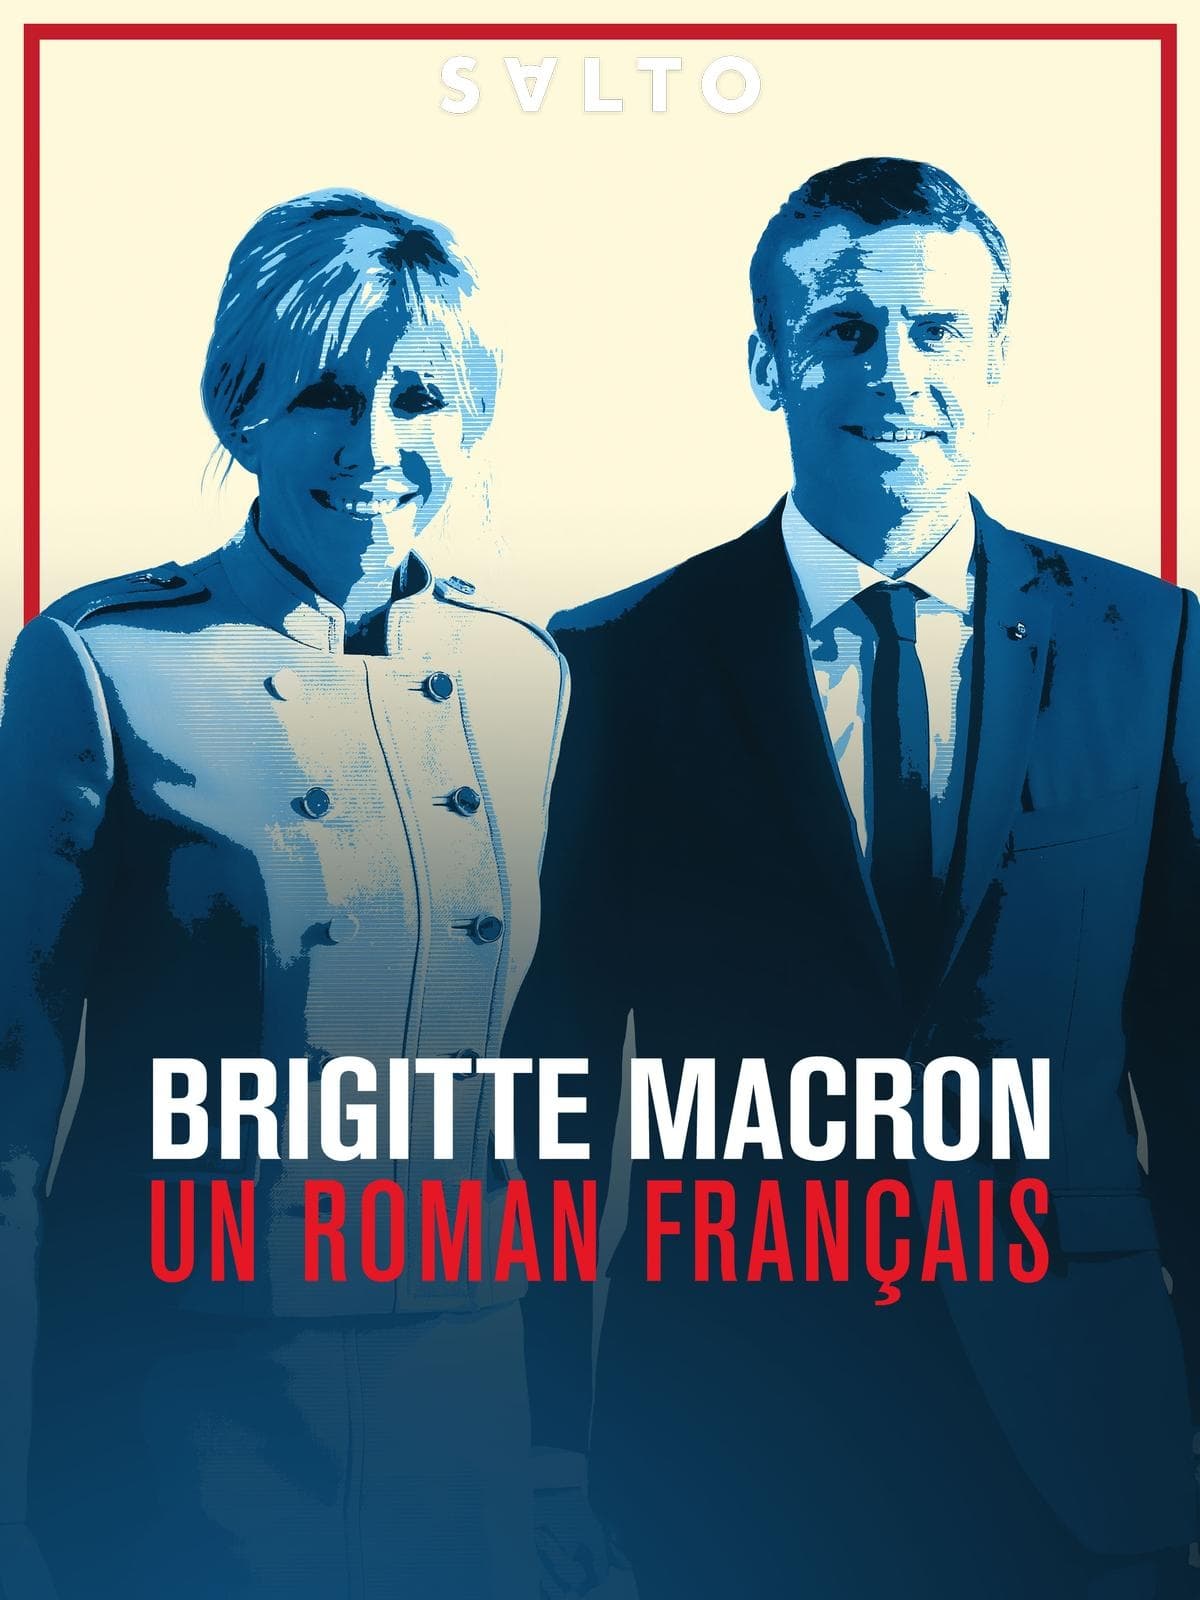 Brigitte macron, un roman français